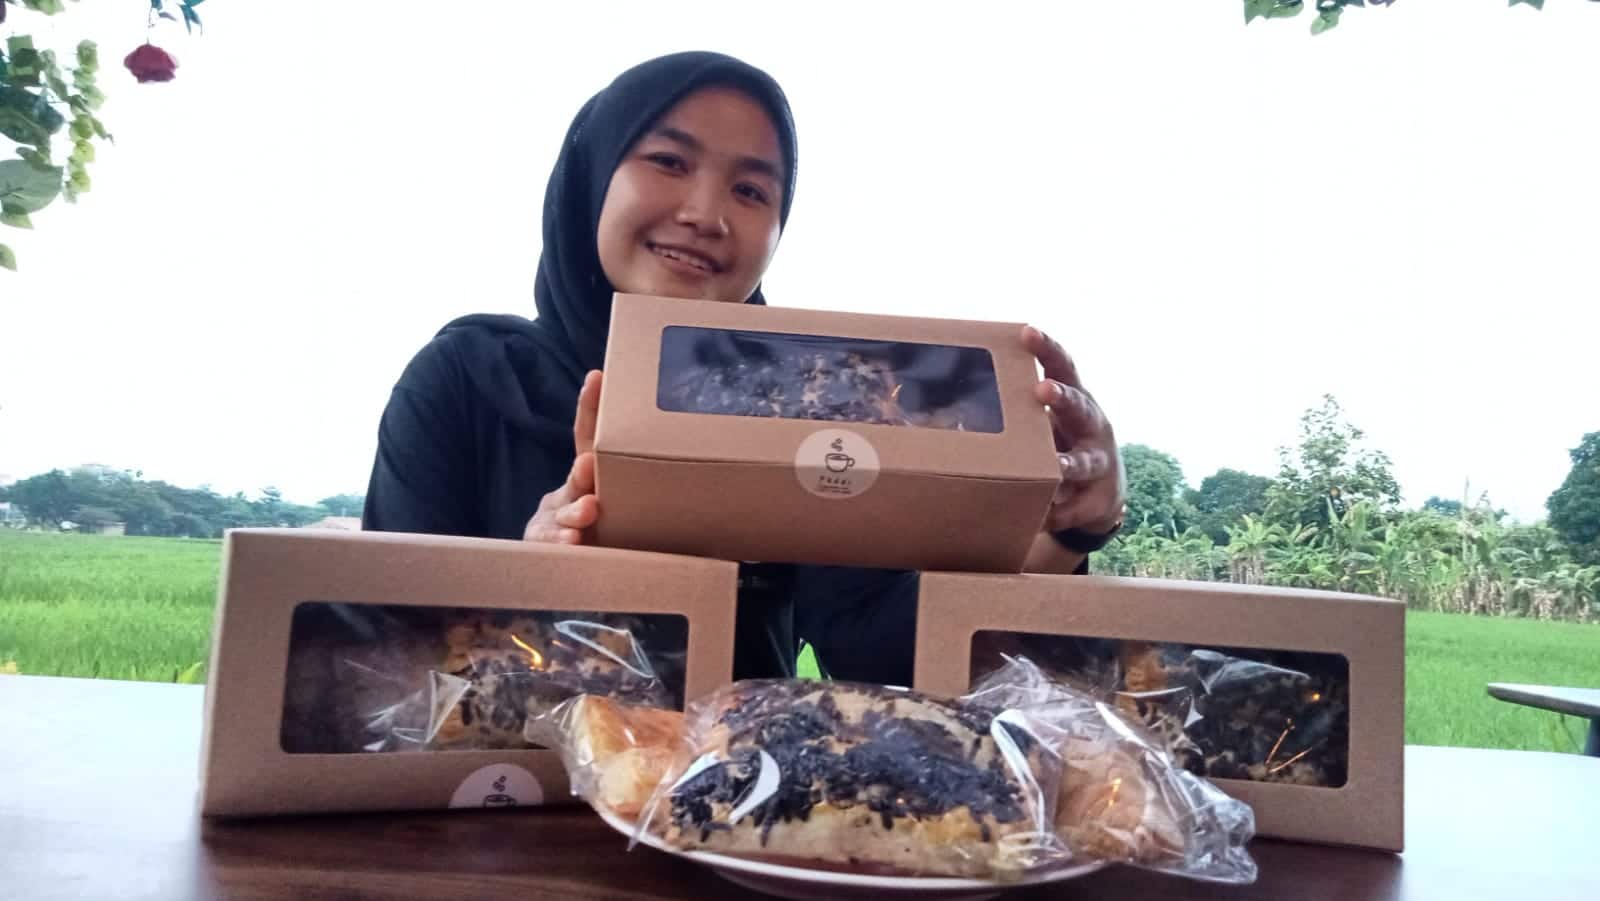 Peluang di Masa PPKM, Paddi Cafe Bistro hadirkan Snack Box untuk Oleh-oleh